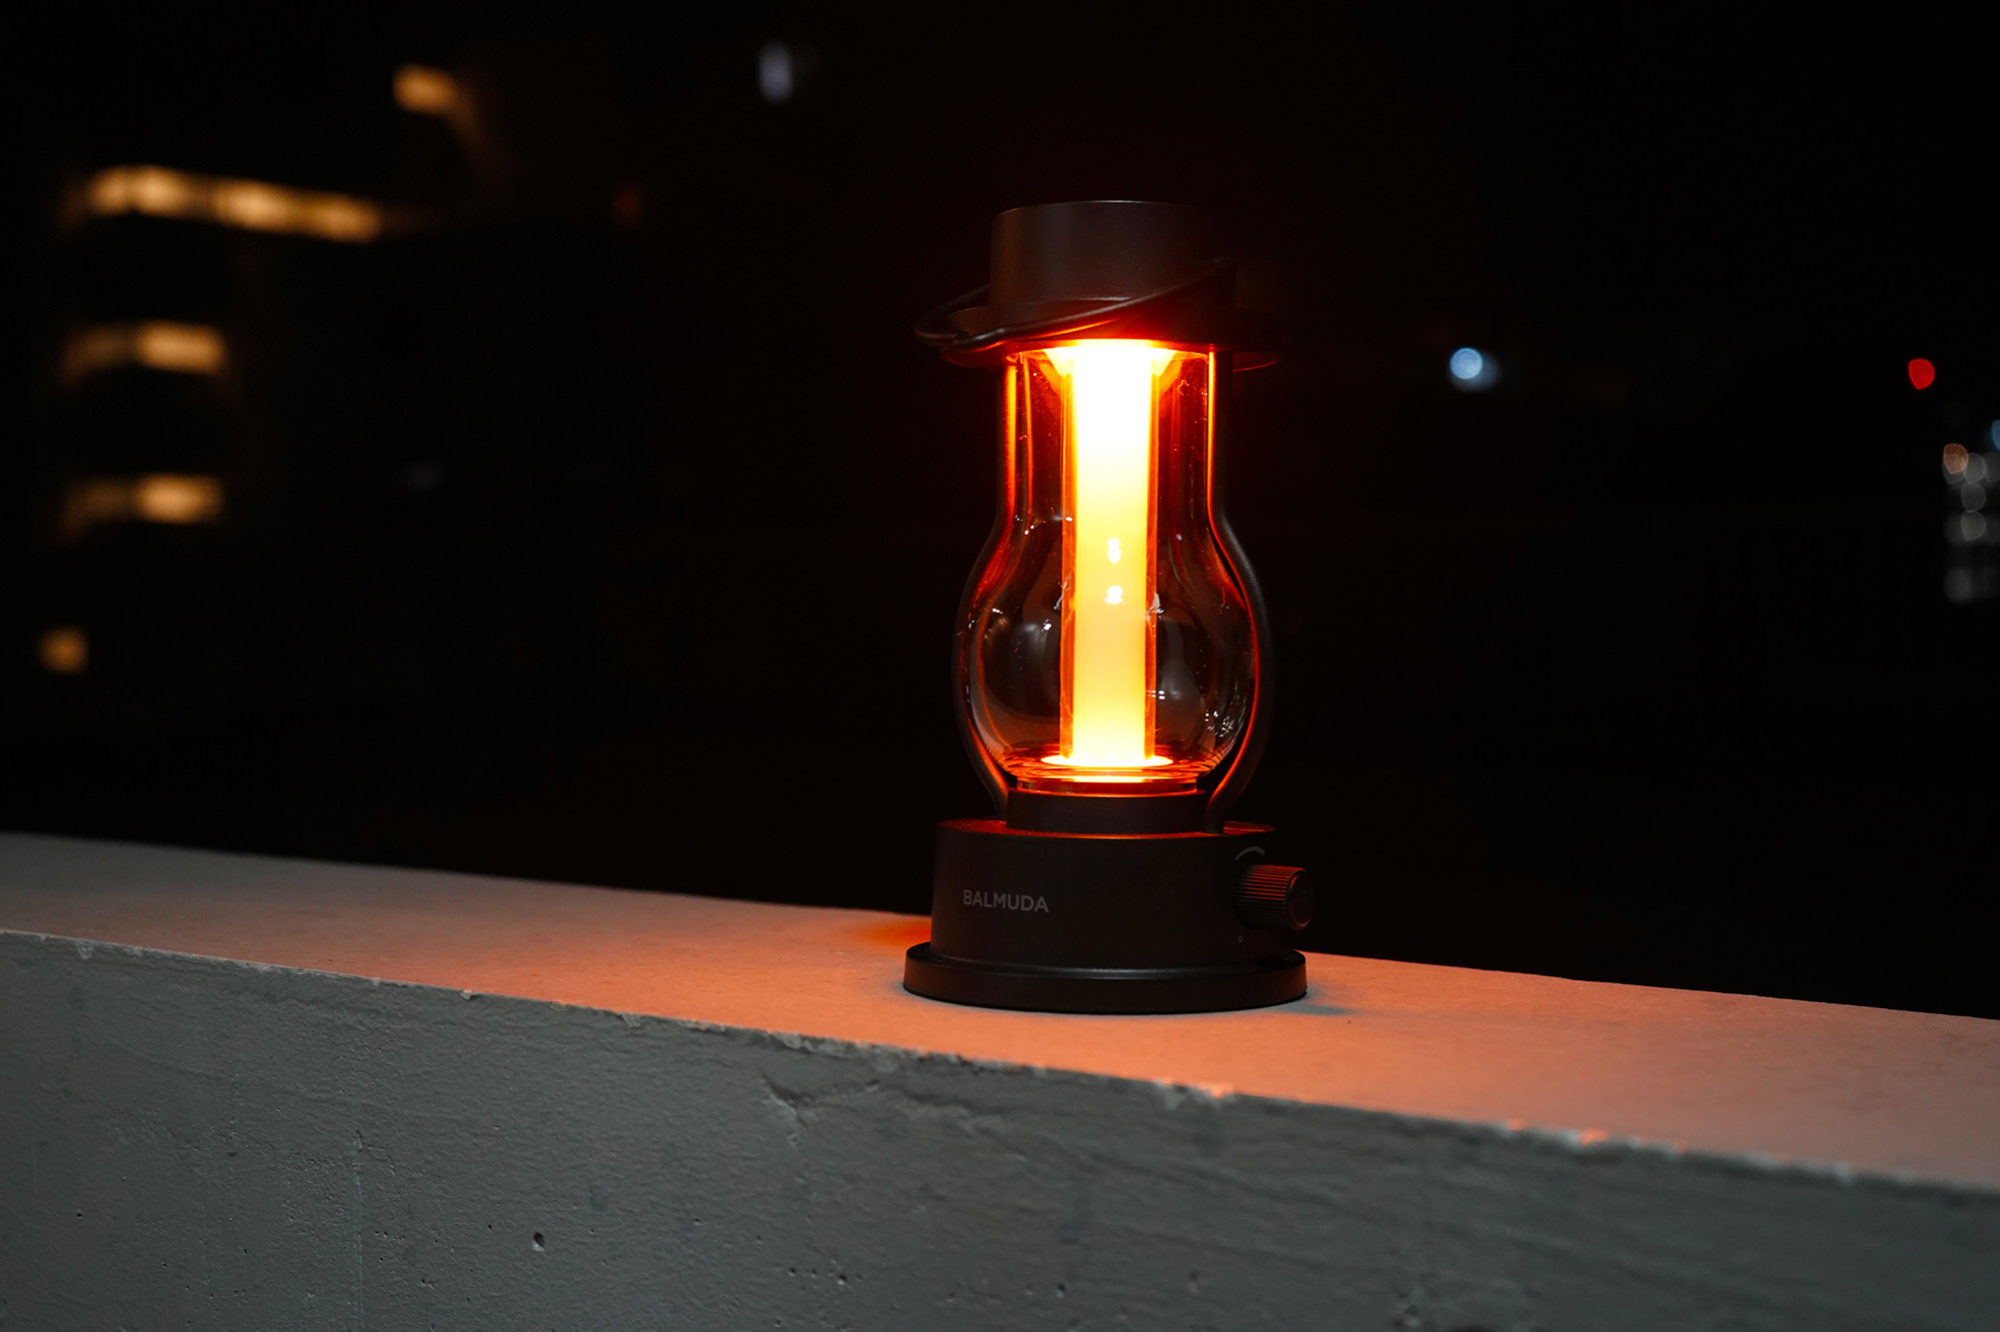 周囲を柔らかい光で照らし安心感を与えてくれるランタン。眺めているだけで落ち着いた気持ちになれるといいます。BALMUDAの「The Lantern」はロウソクのような光のゆらぎが再現され、味わい深い時間を提供してくれます。電気でつくタイプのものなので、火災の心配もありません。